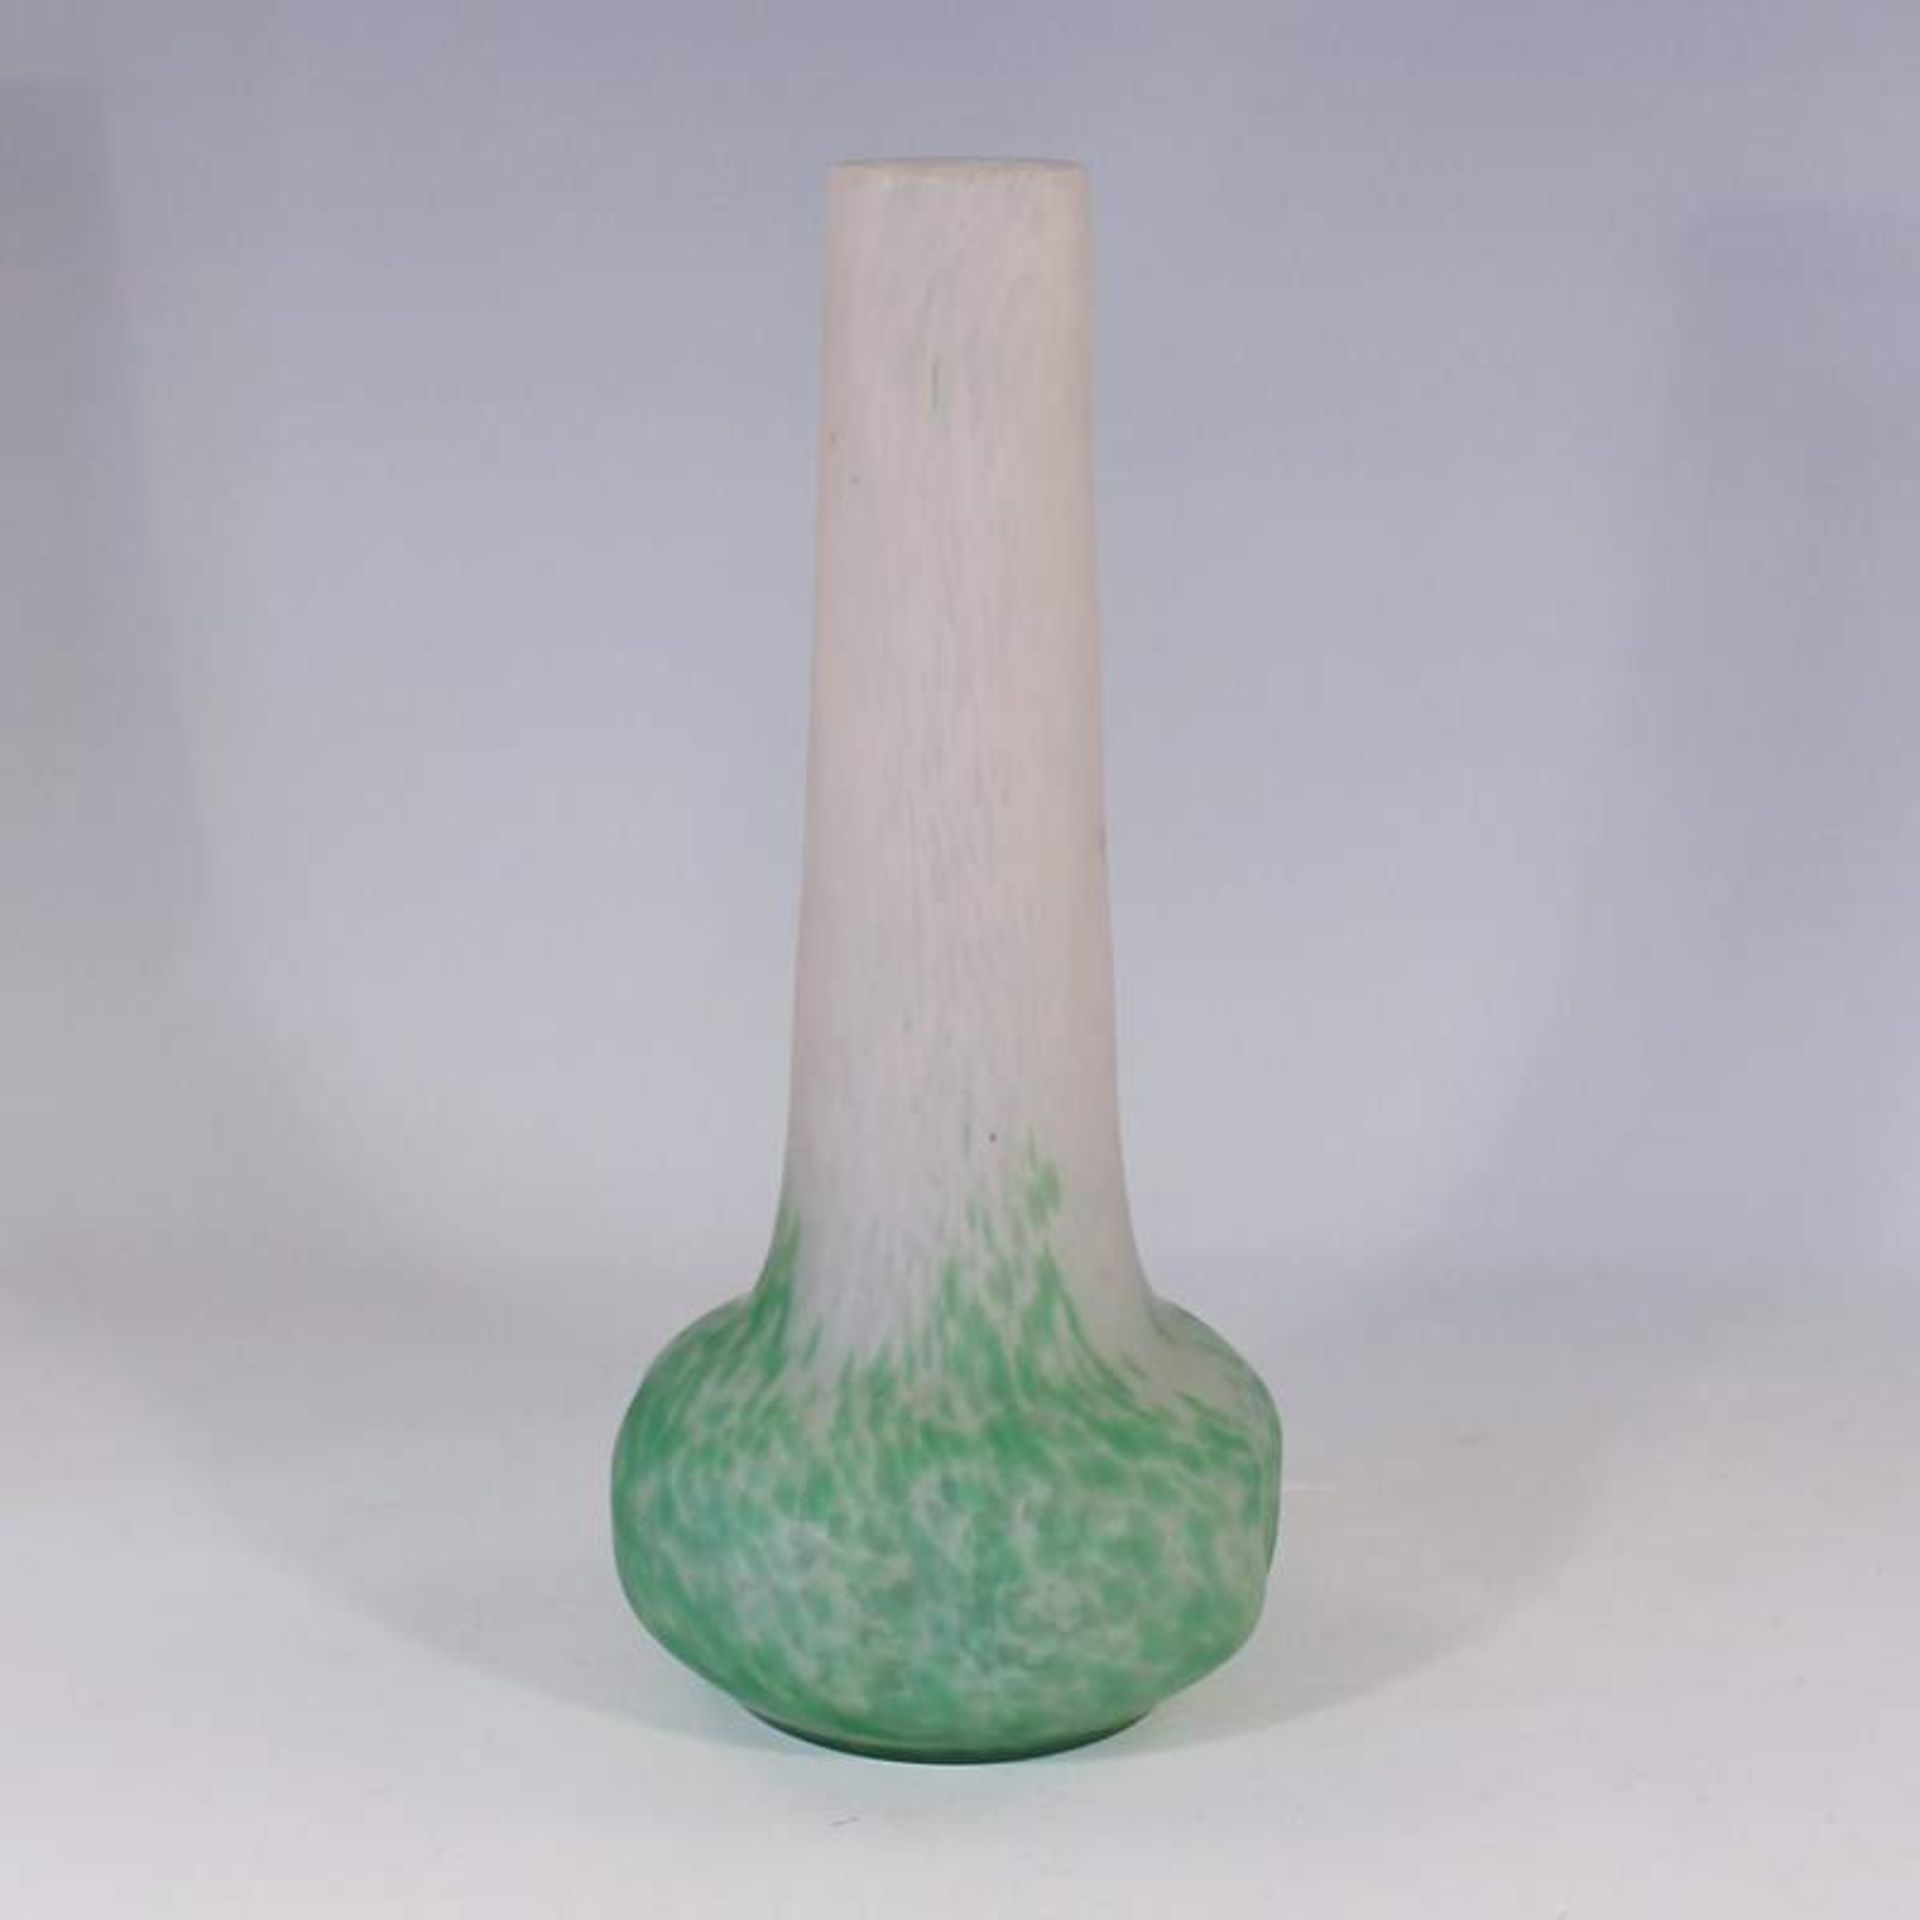 Schneider - Vase um 1918-30, Frankreich, farbloses Glas, runder Stand, bauchiger, an allen Seiten